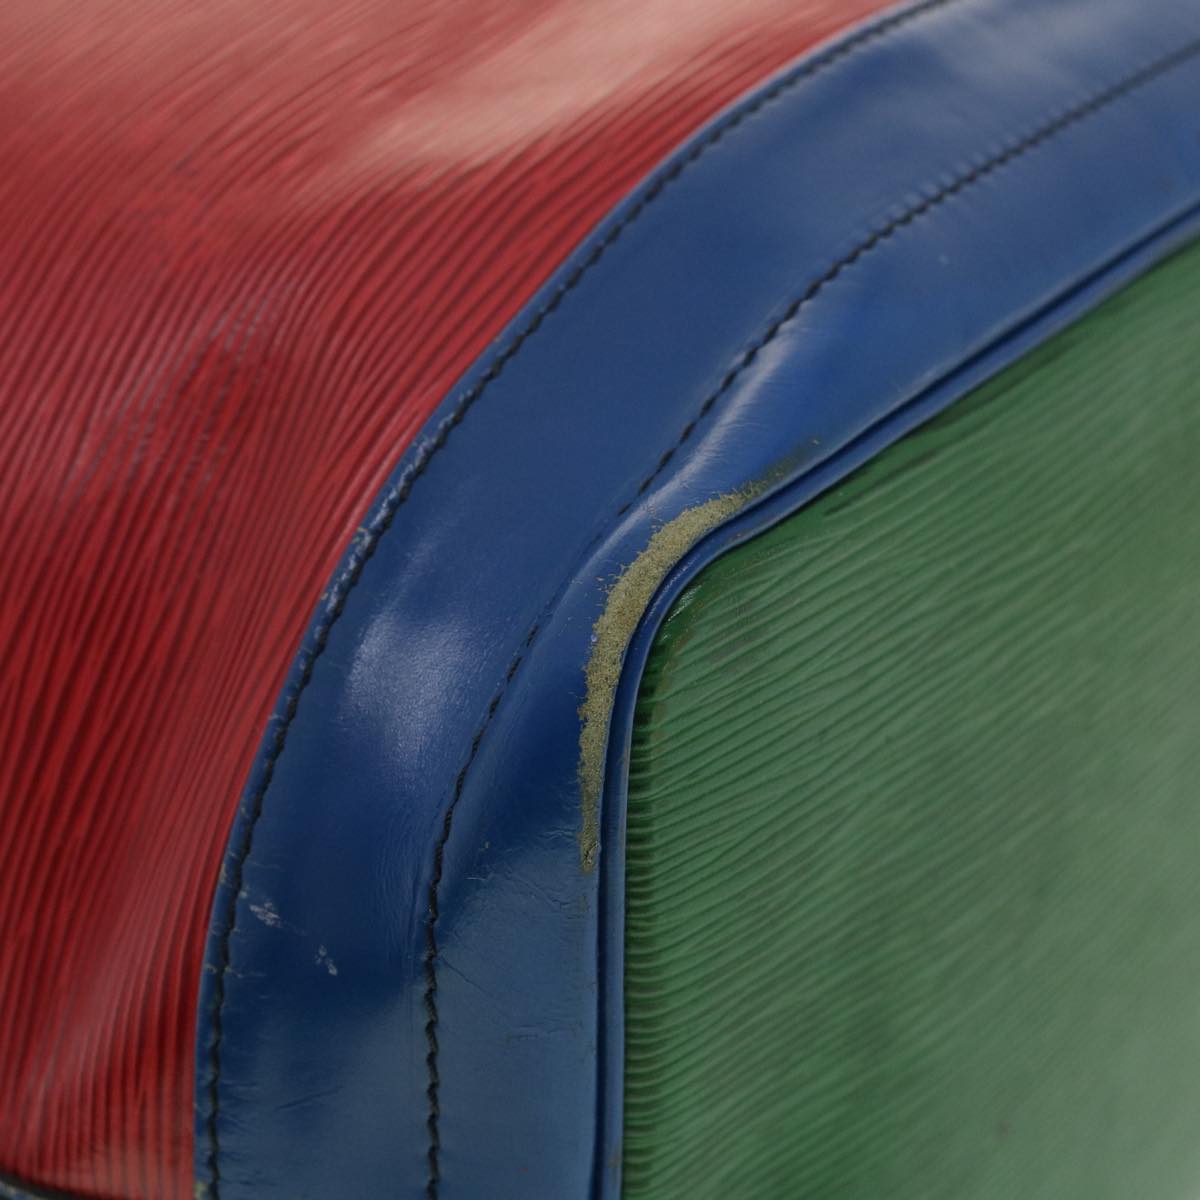 LOUIS VUITTON Epi Tricolor Noe Shoulder Bag Green Blue Red M44084 LV Auth 34585